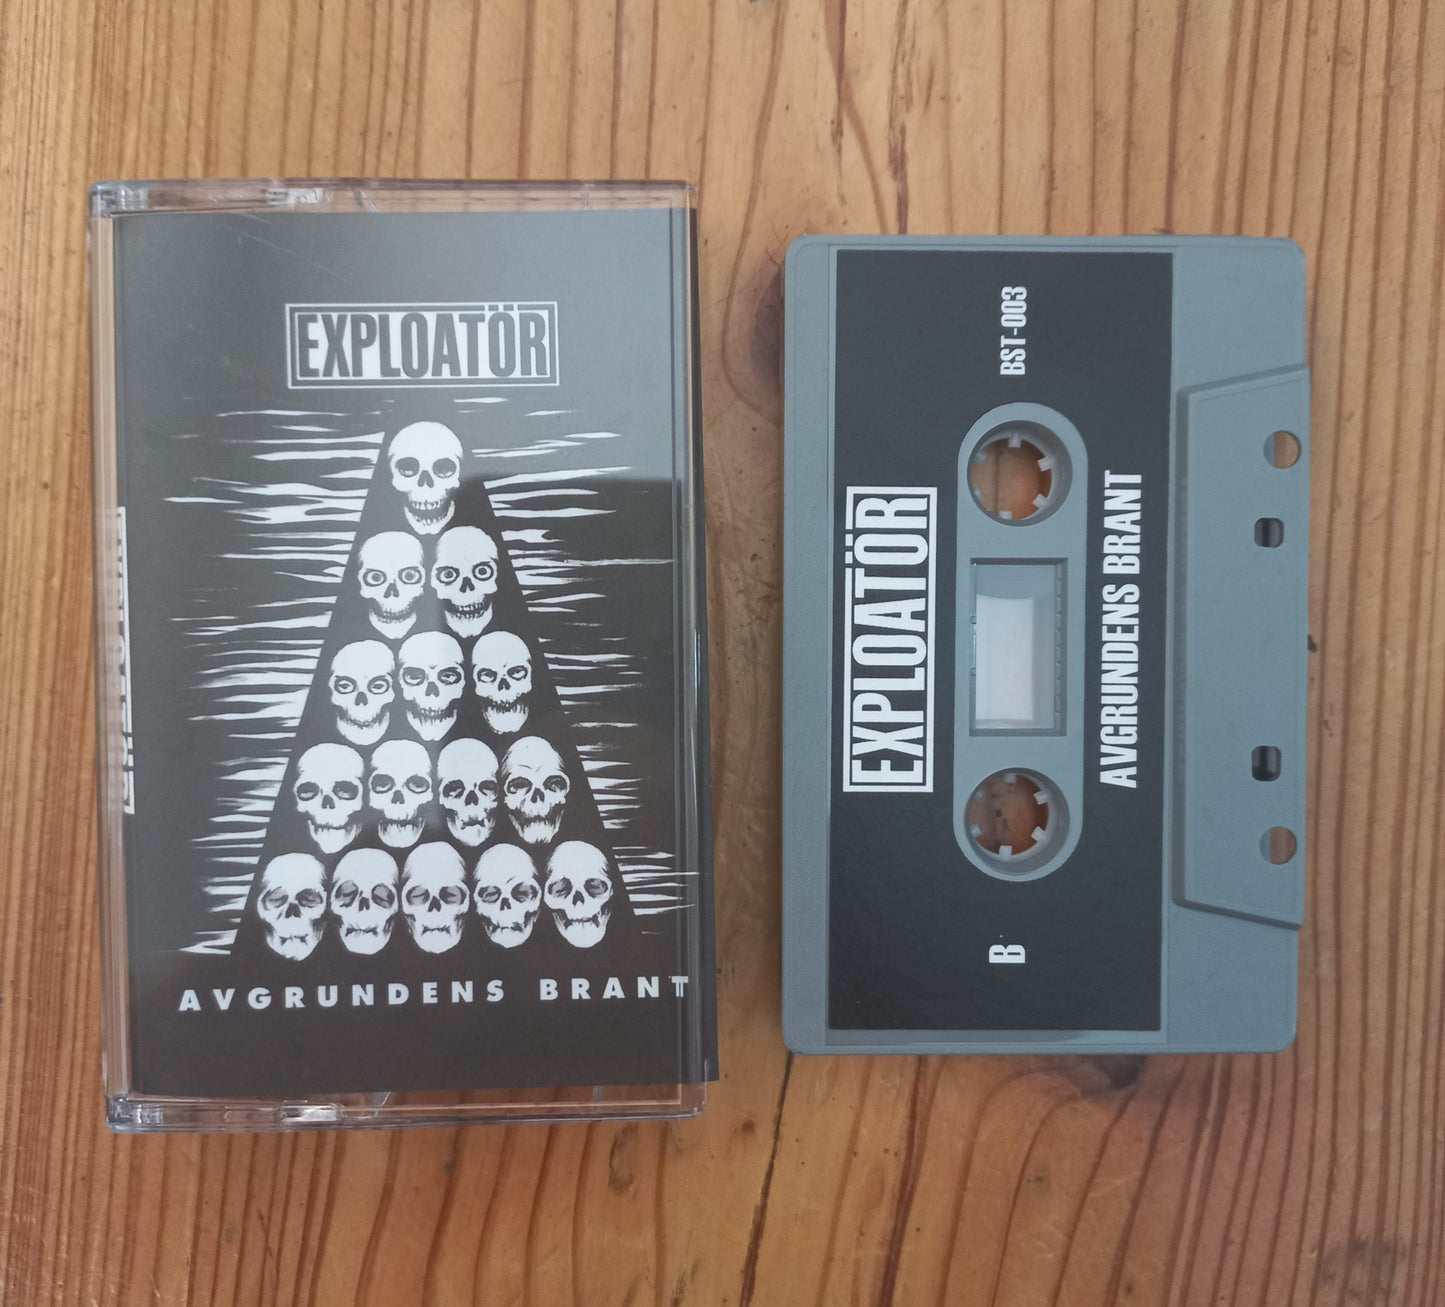 Exploator - "Avgrundens Brant" cassette tape